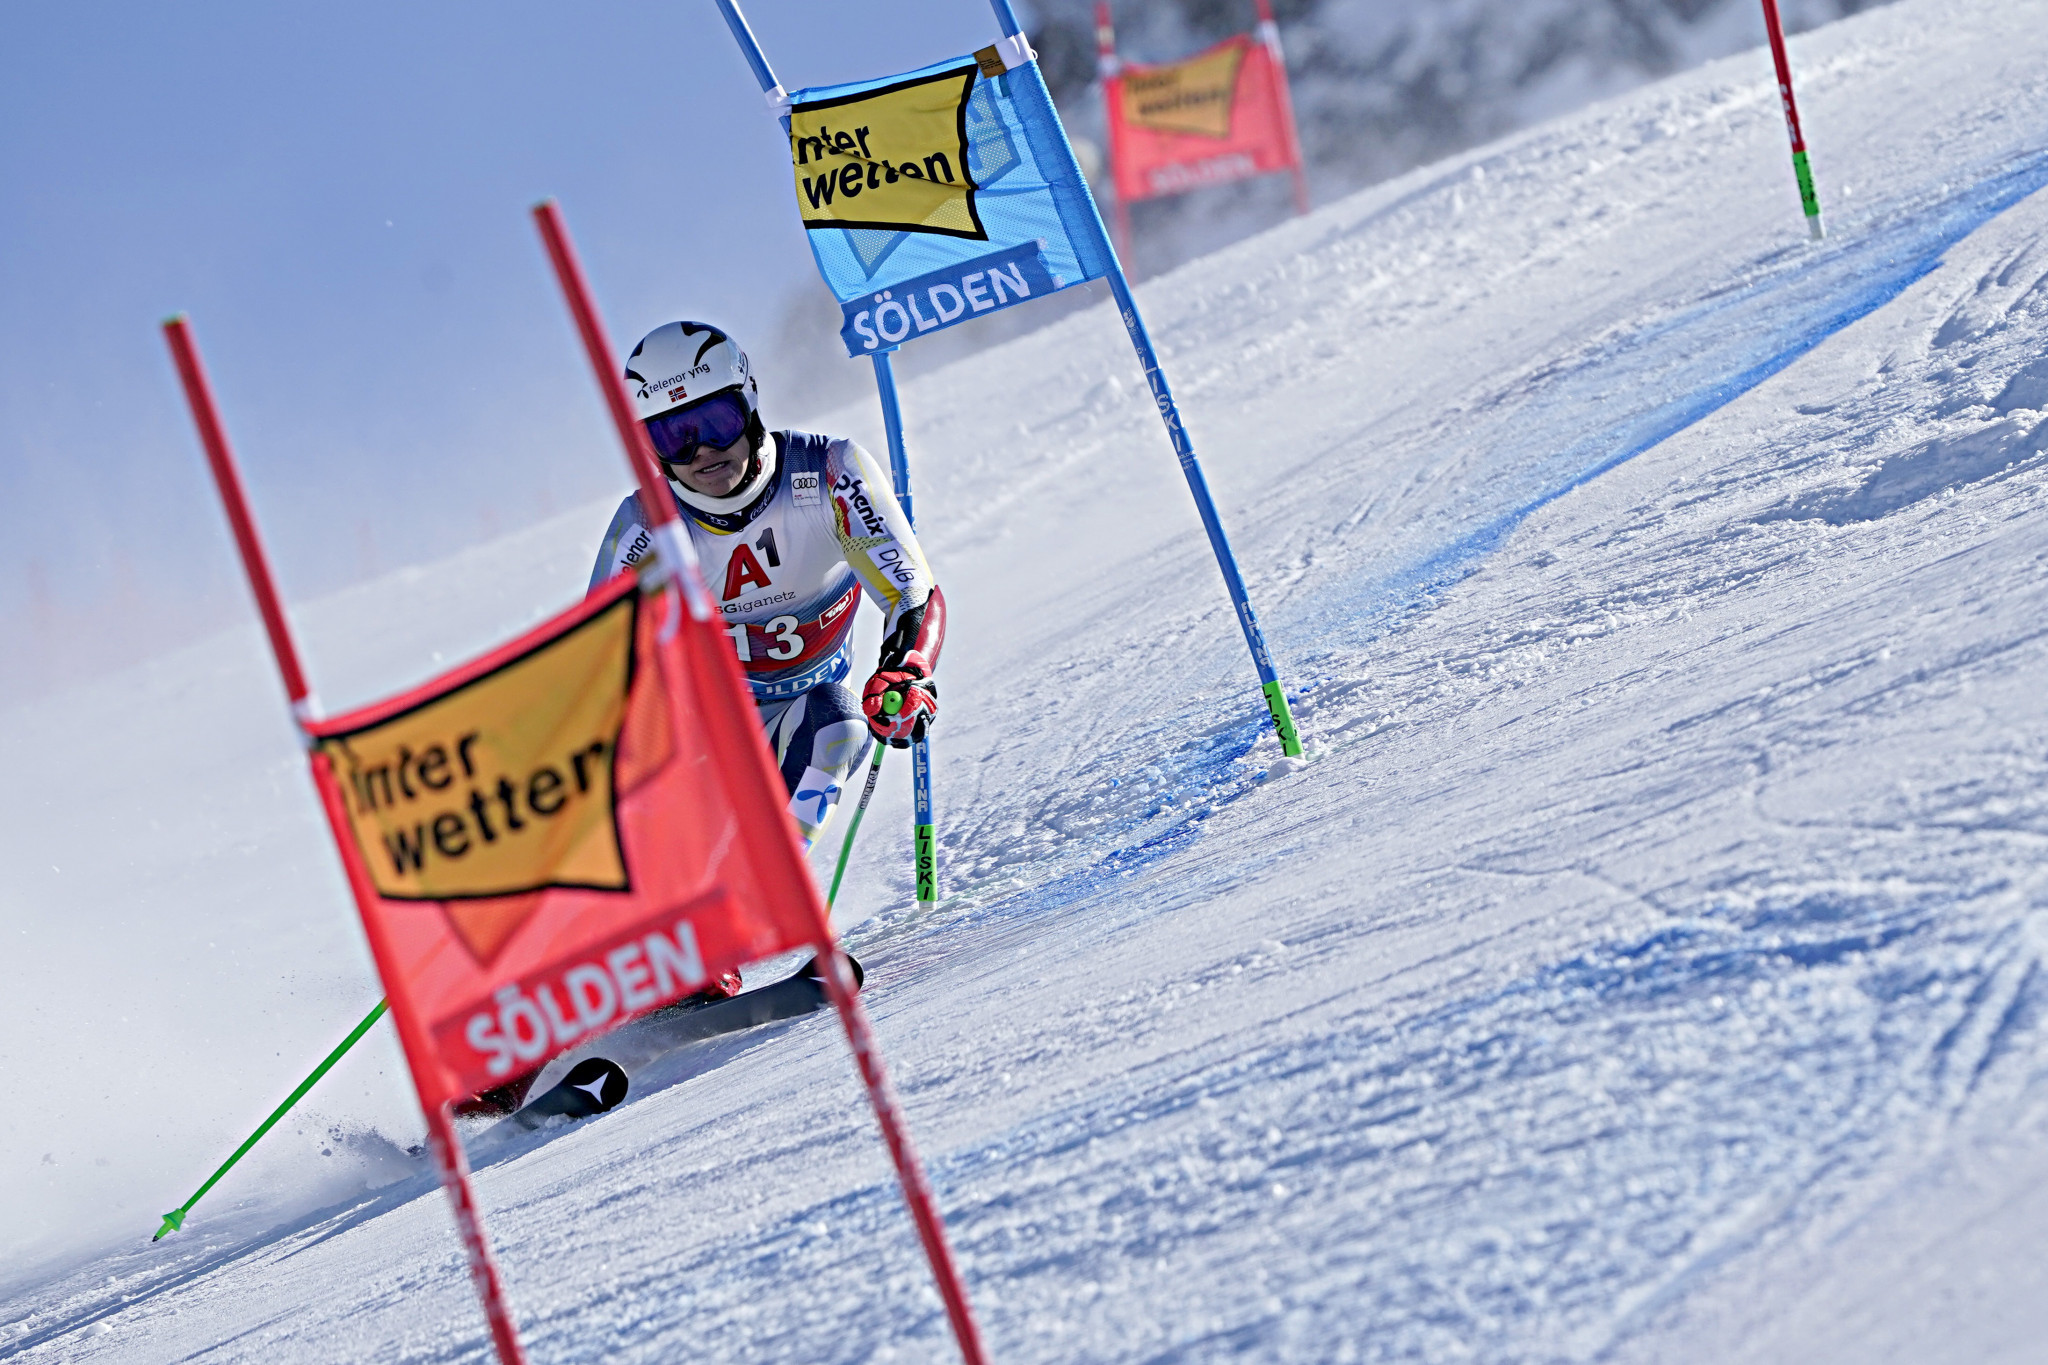 Braathen takes first FIS Alpine Ski World Cup win at Sölden season opener